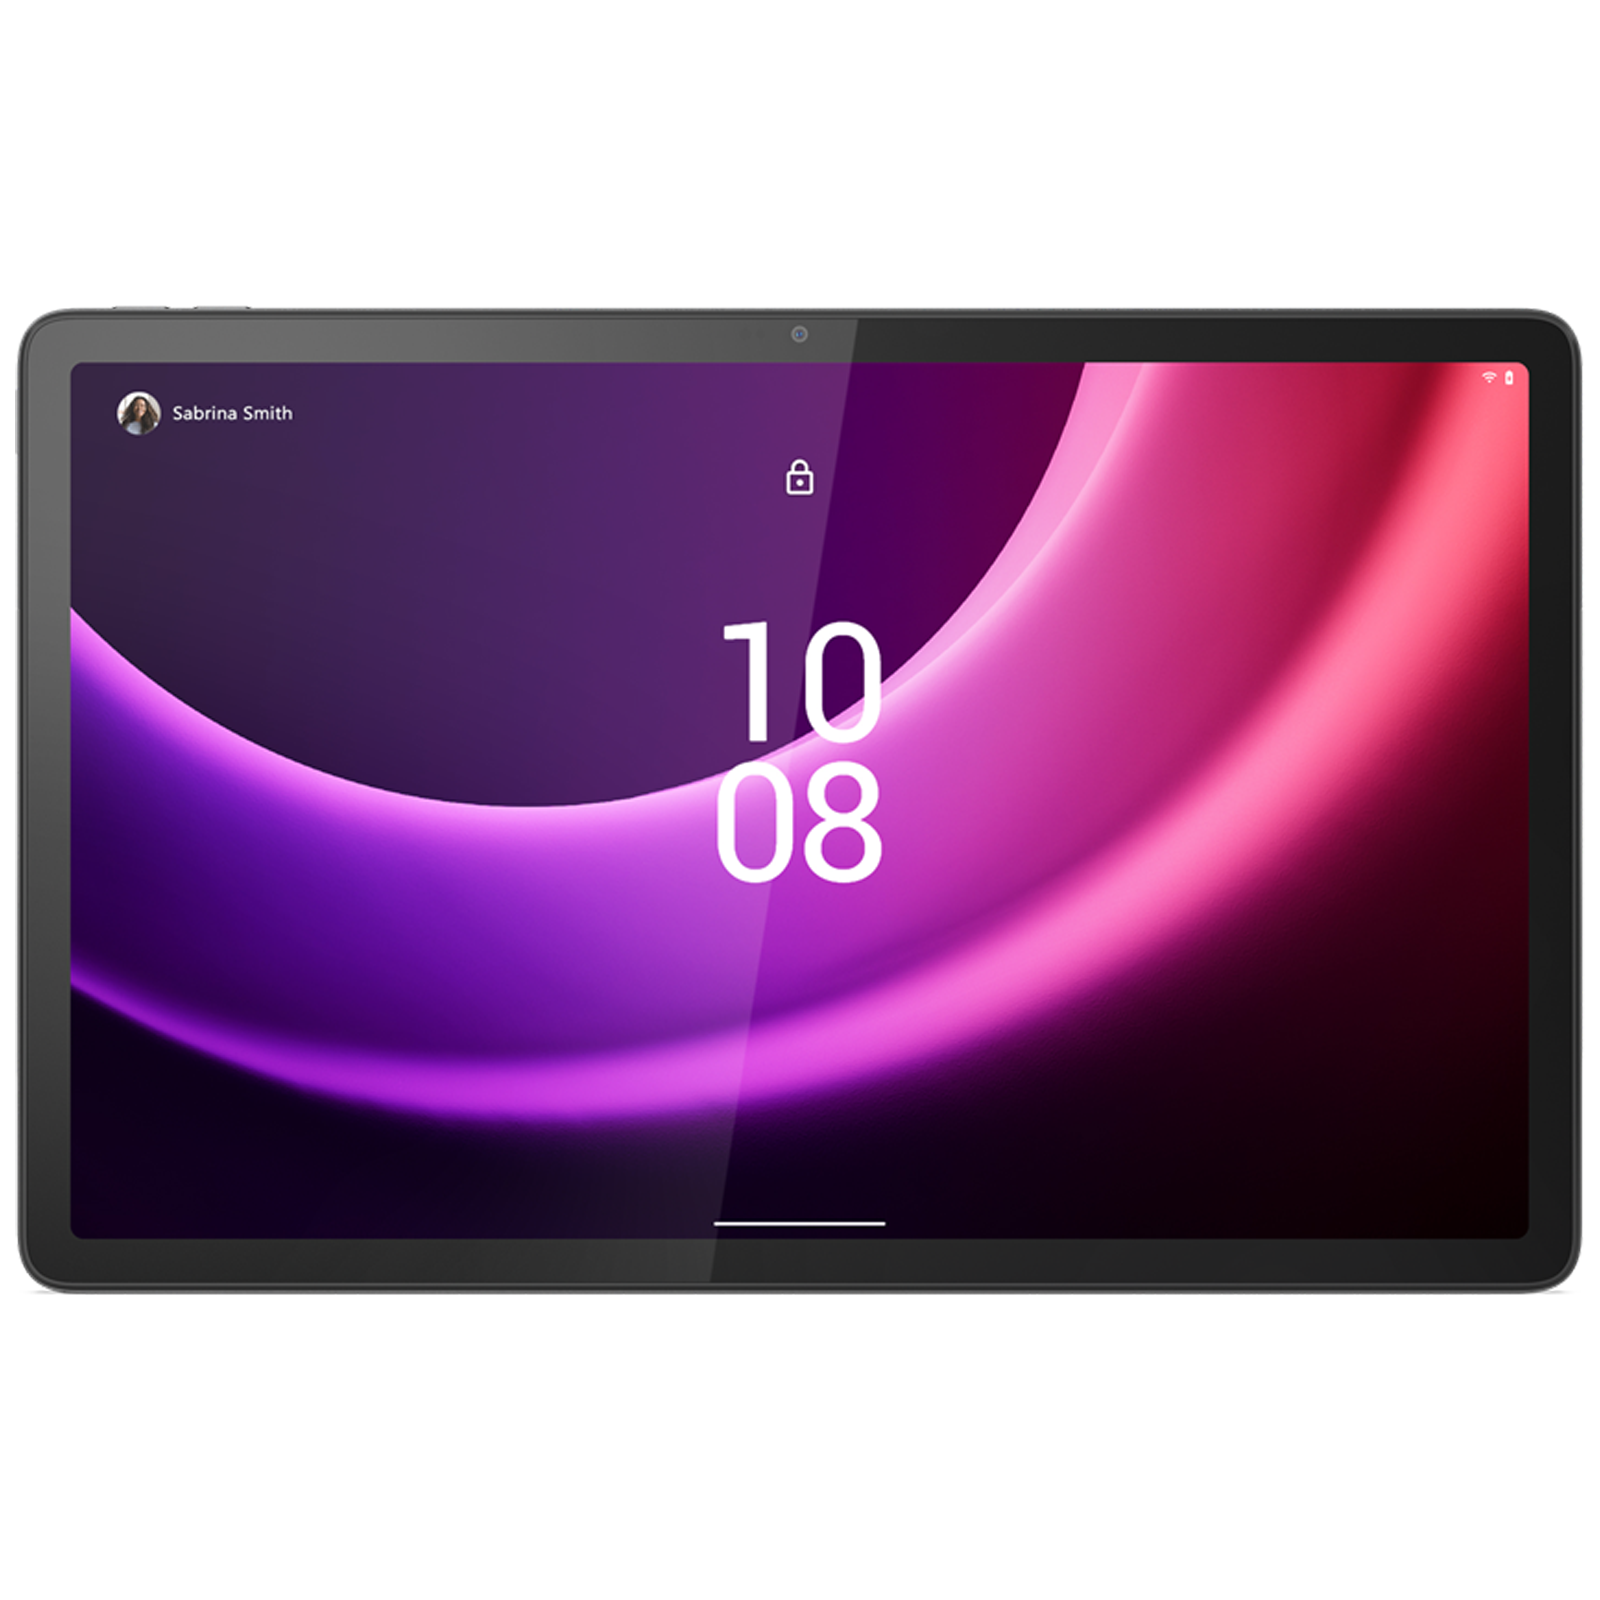 Tablet - TCL TAB 10 4G, Gris, 32 GB, 10,1  HD, 3 GB RAM, MediaTek